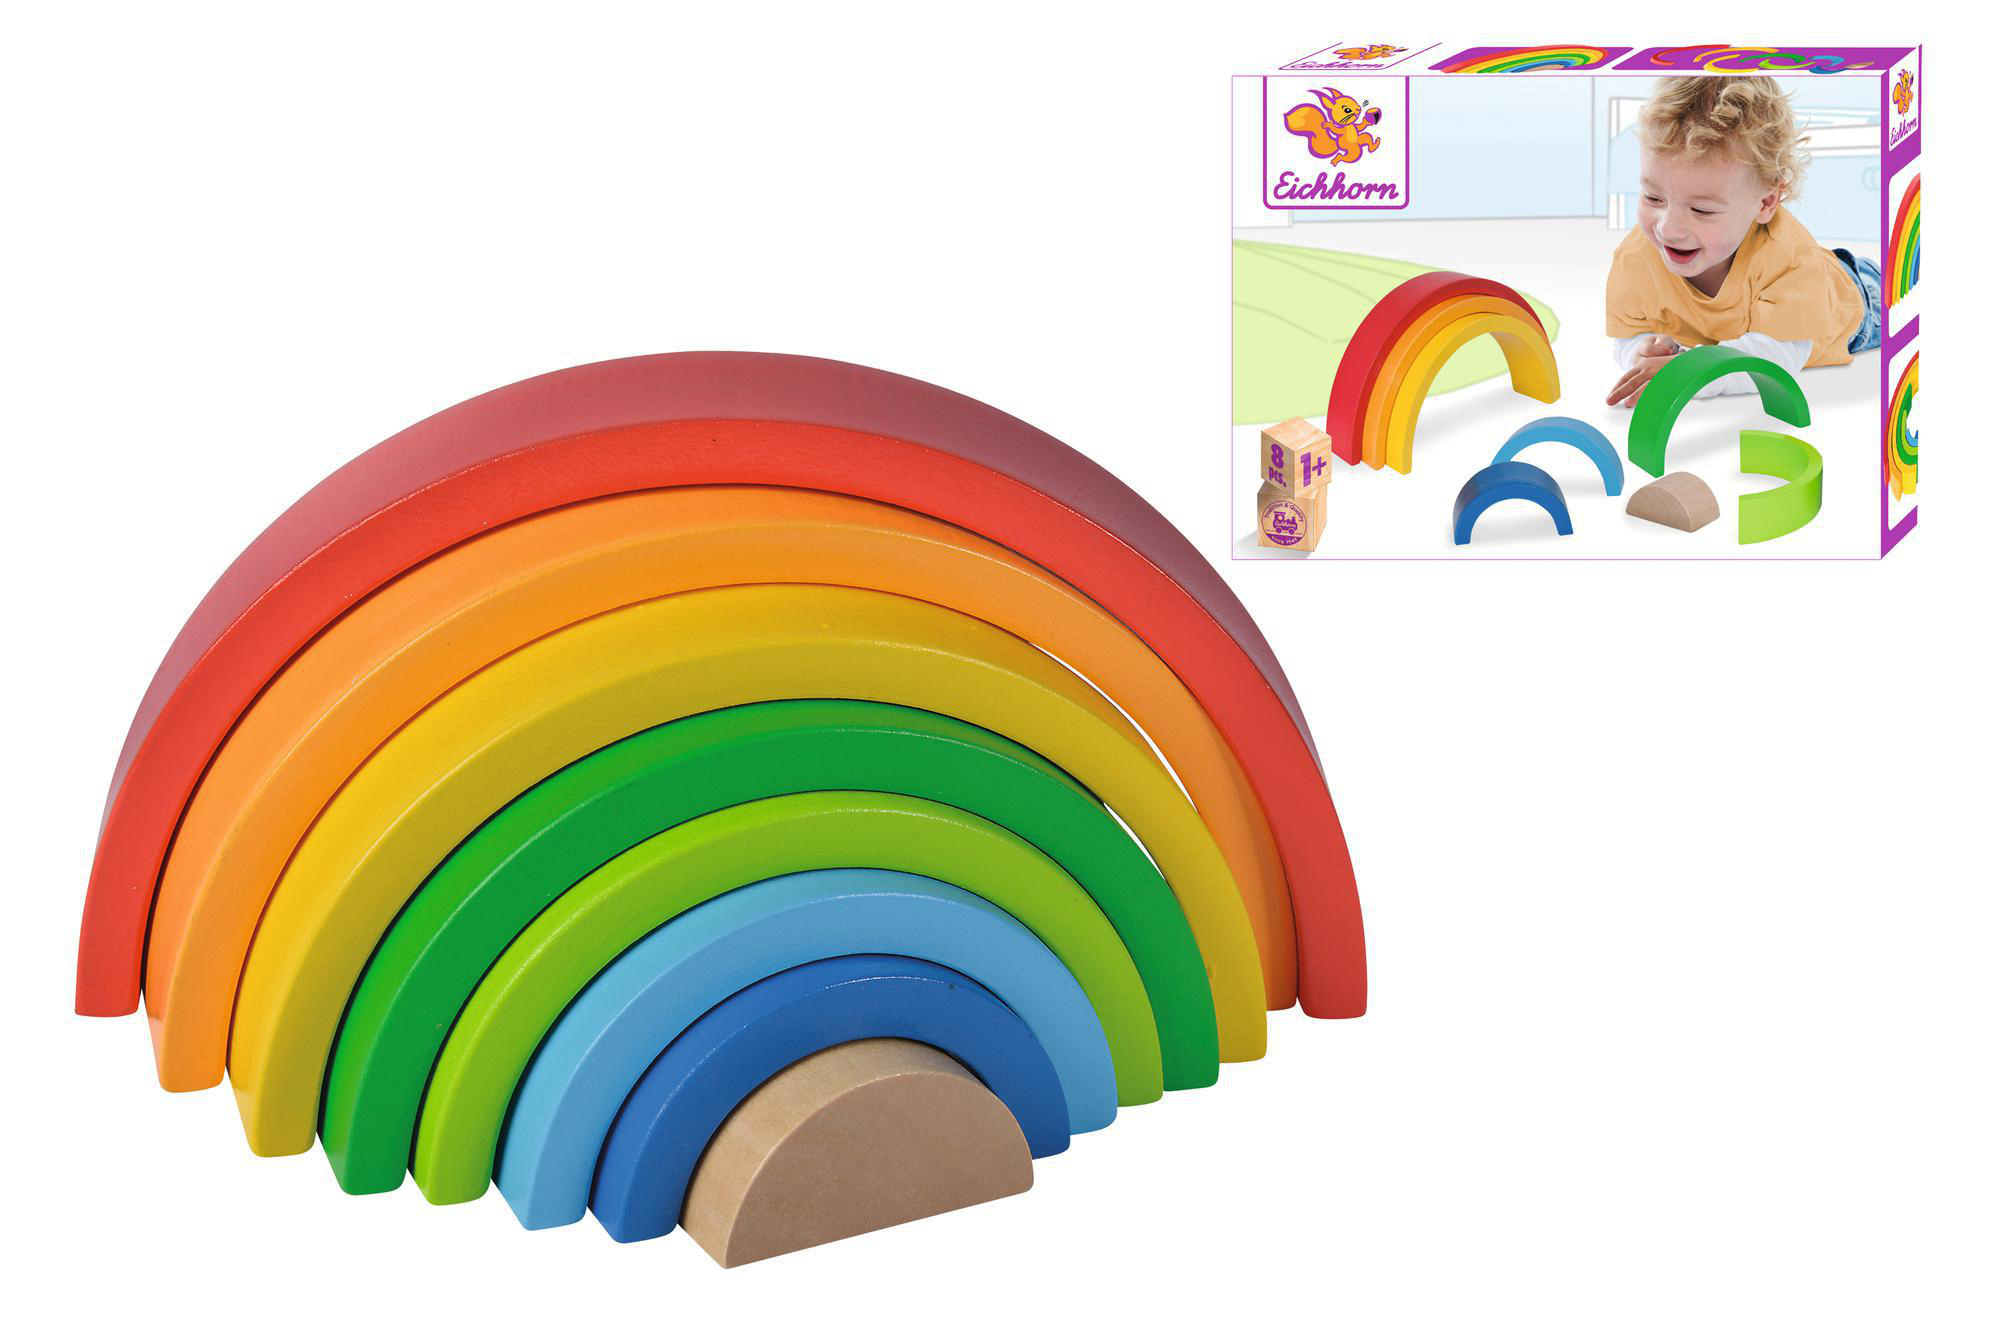 EICHHORN Regenbogen Stapelspielzeug Mehrfarbig